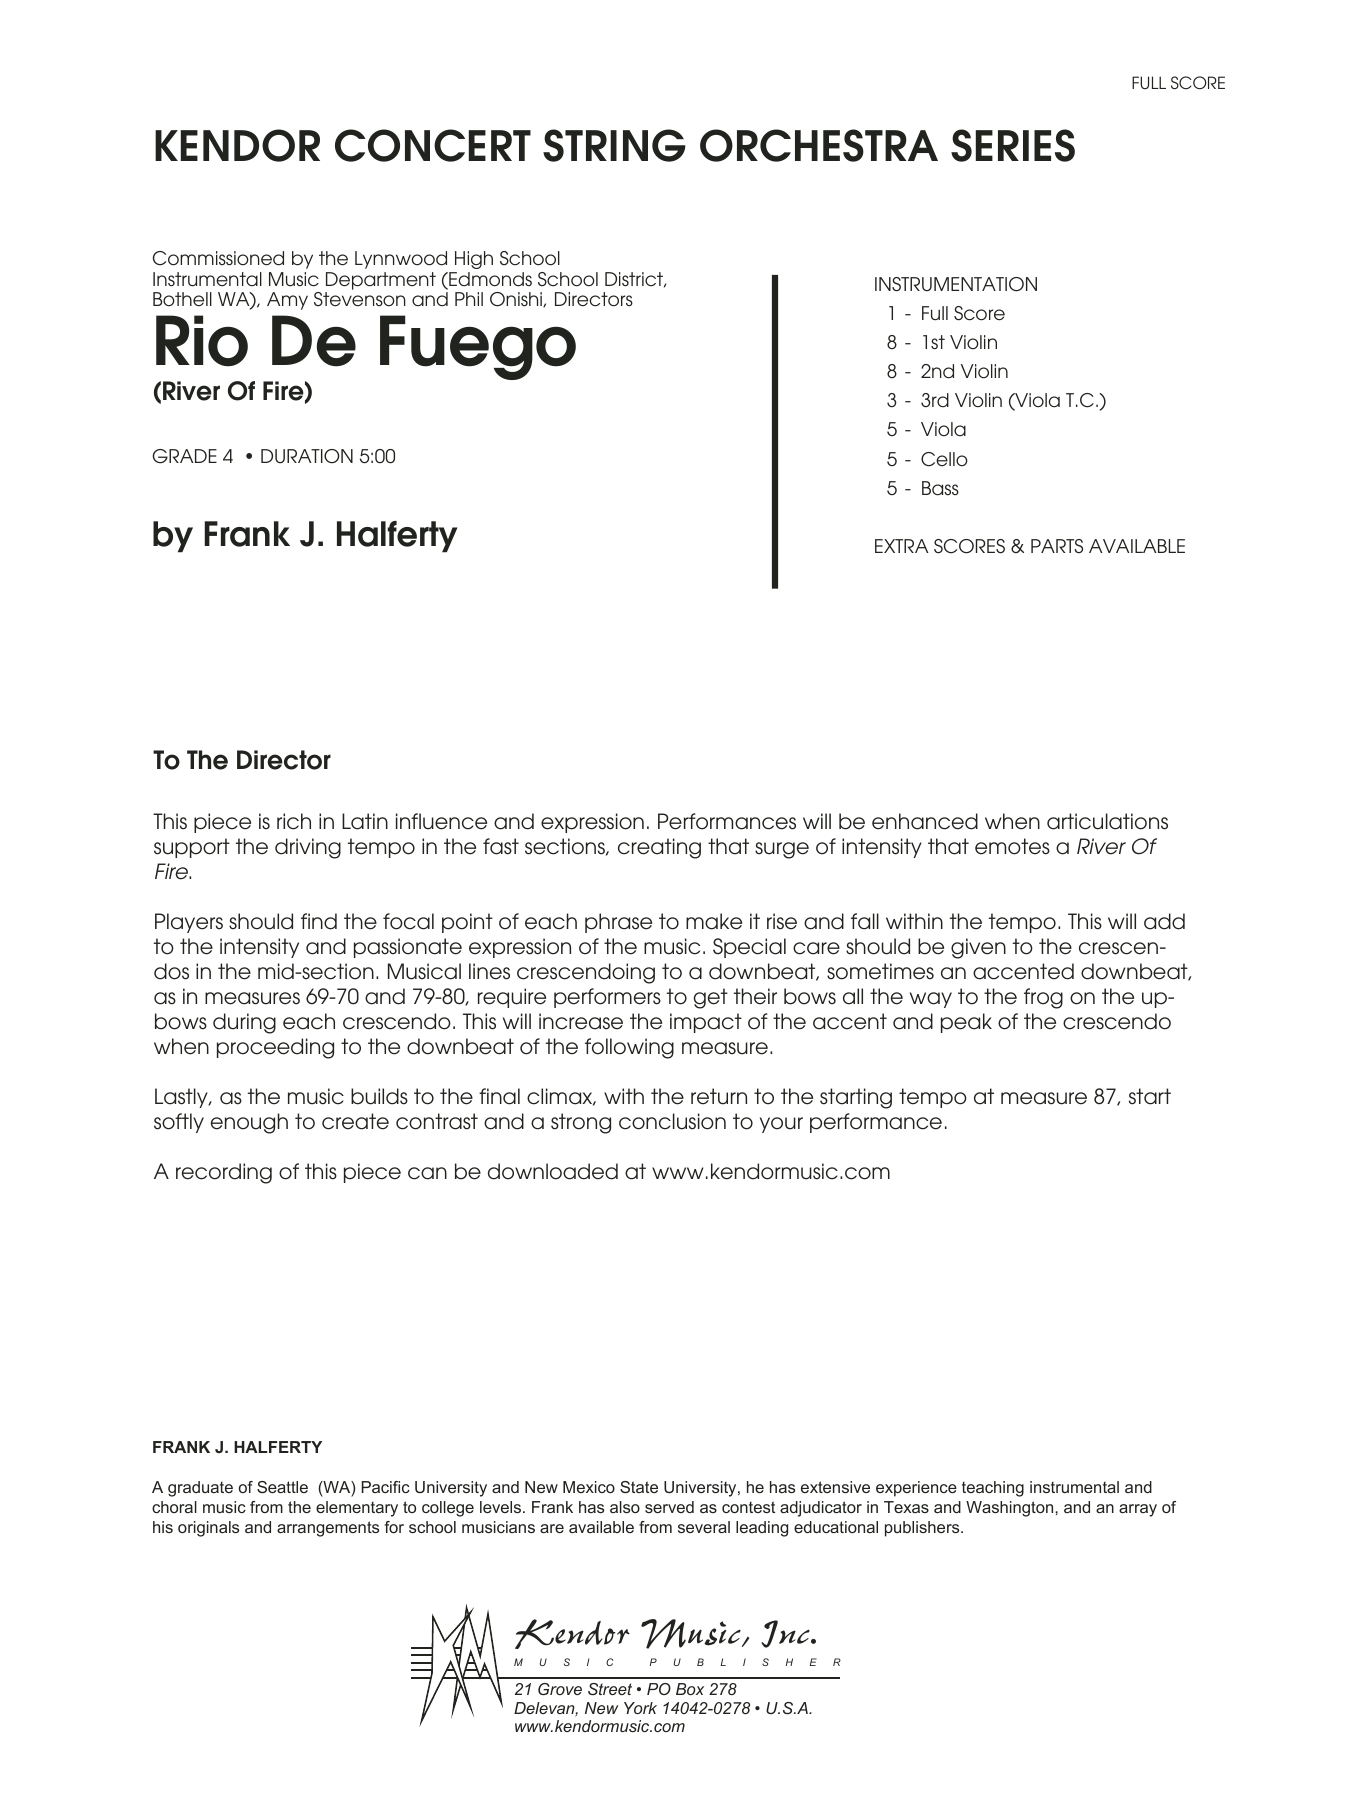 Rio De Fuego (River Of Fire) - Full Score (Orchestra) von Frank J. Halferty